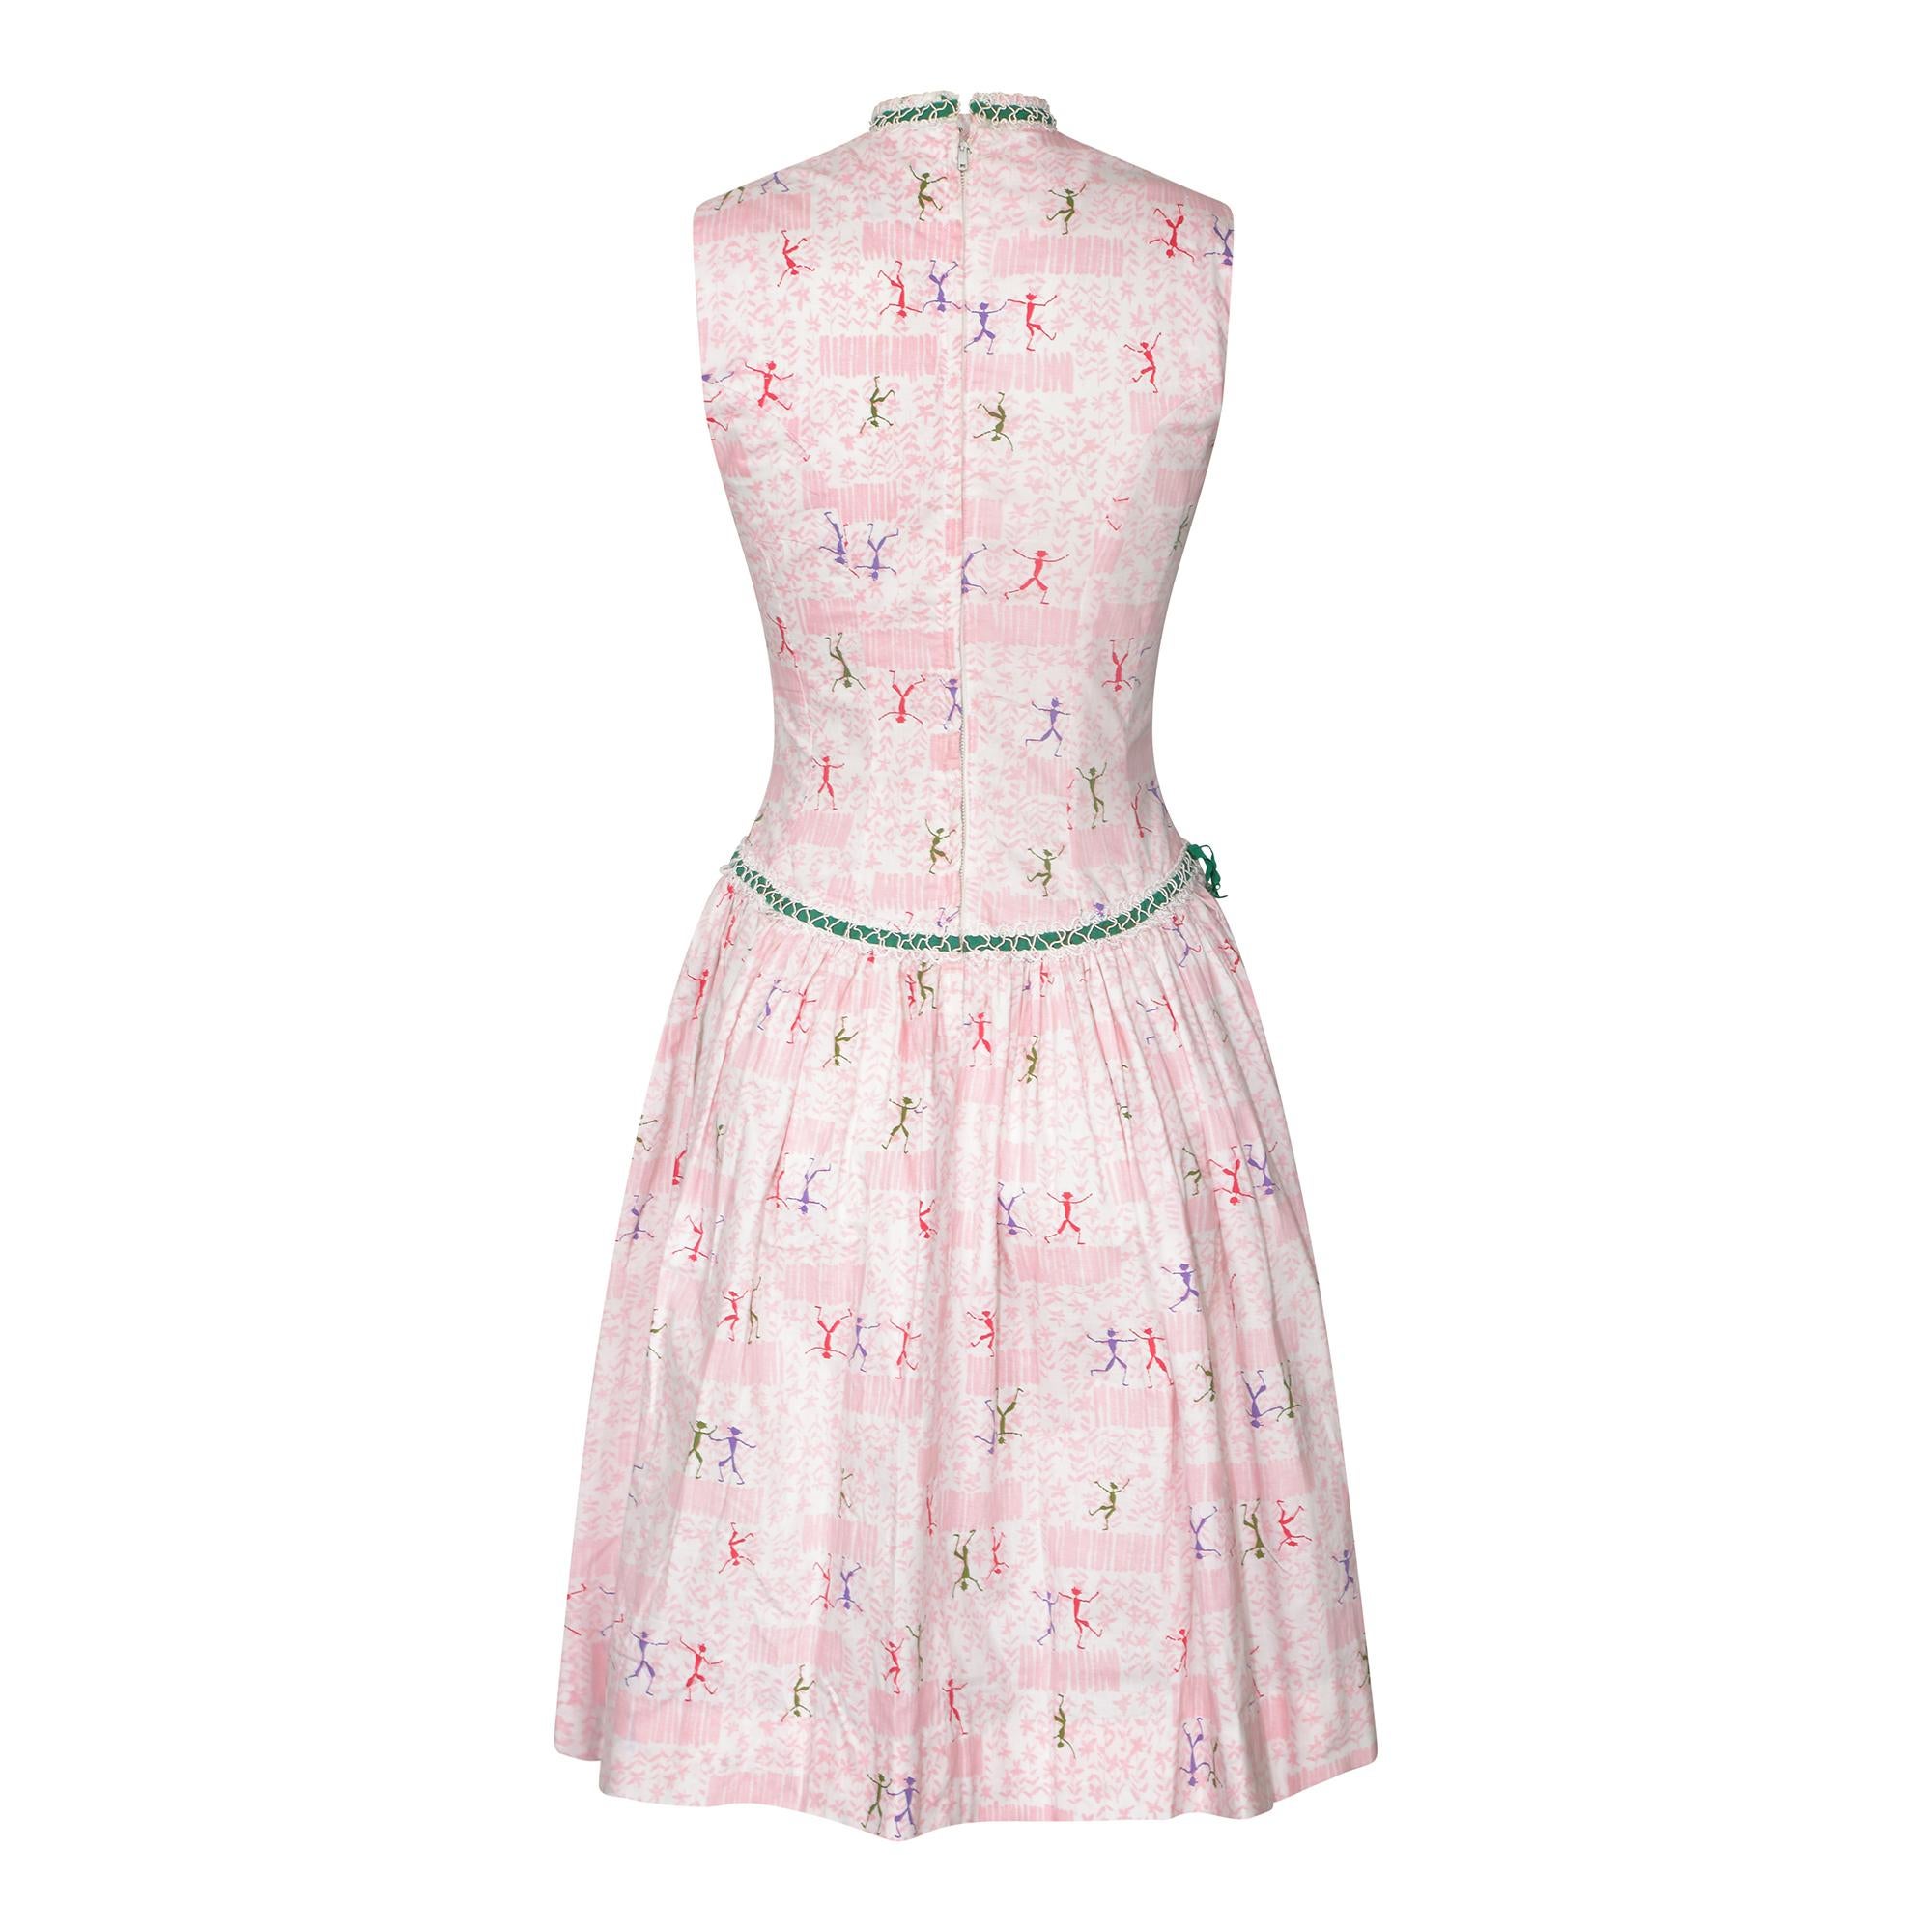 Dies ist ein absolut originelles Kleid aus den 1950er Jahren mit dem Label Teena Paige Fashions. Der Druck ist ein wahres Vergnügen und zeigt einen rosafarbenen, blumengeschmückten Gartenhintergrund mit einem Duo und manchmal einem Trio von